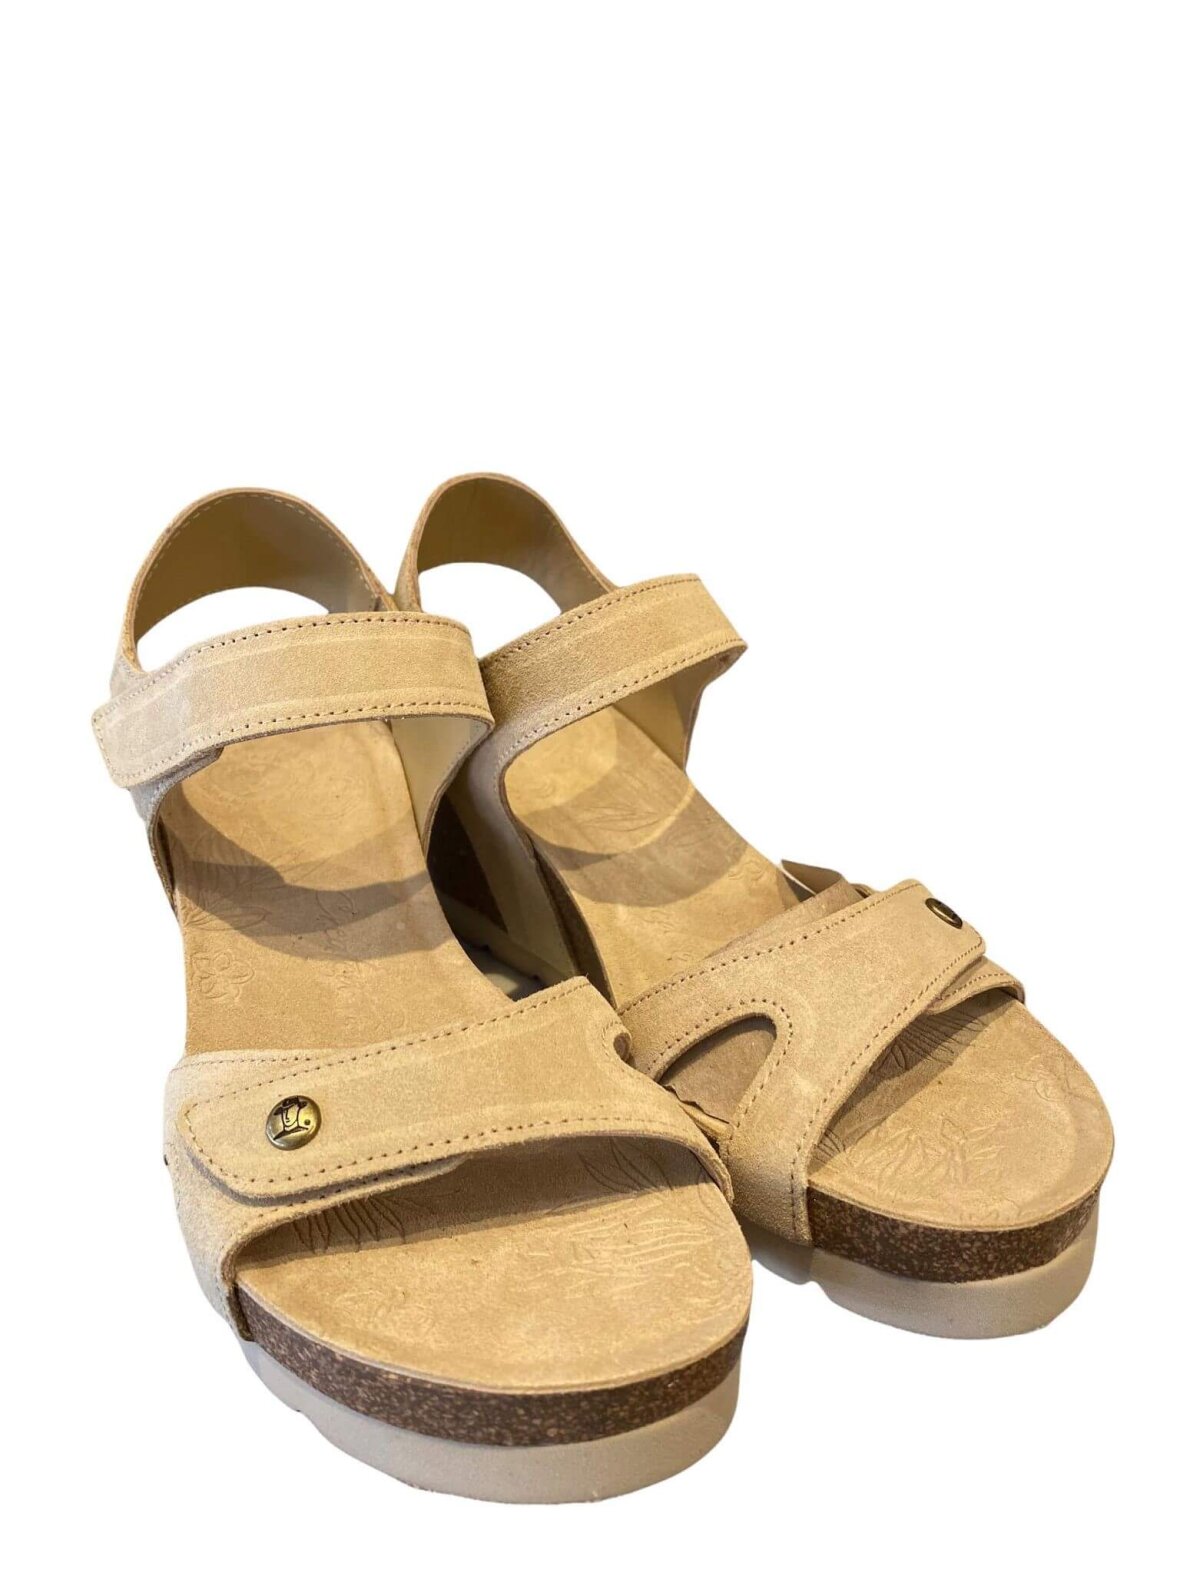 Ende Sult Wetland Hos Helle M i Vejle kan du købe sandal fra Panama Jack i beige ruskind.